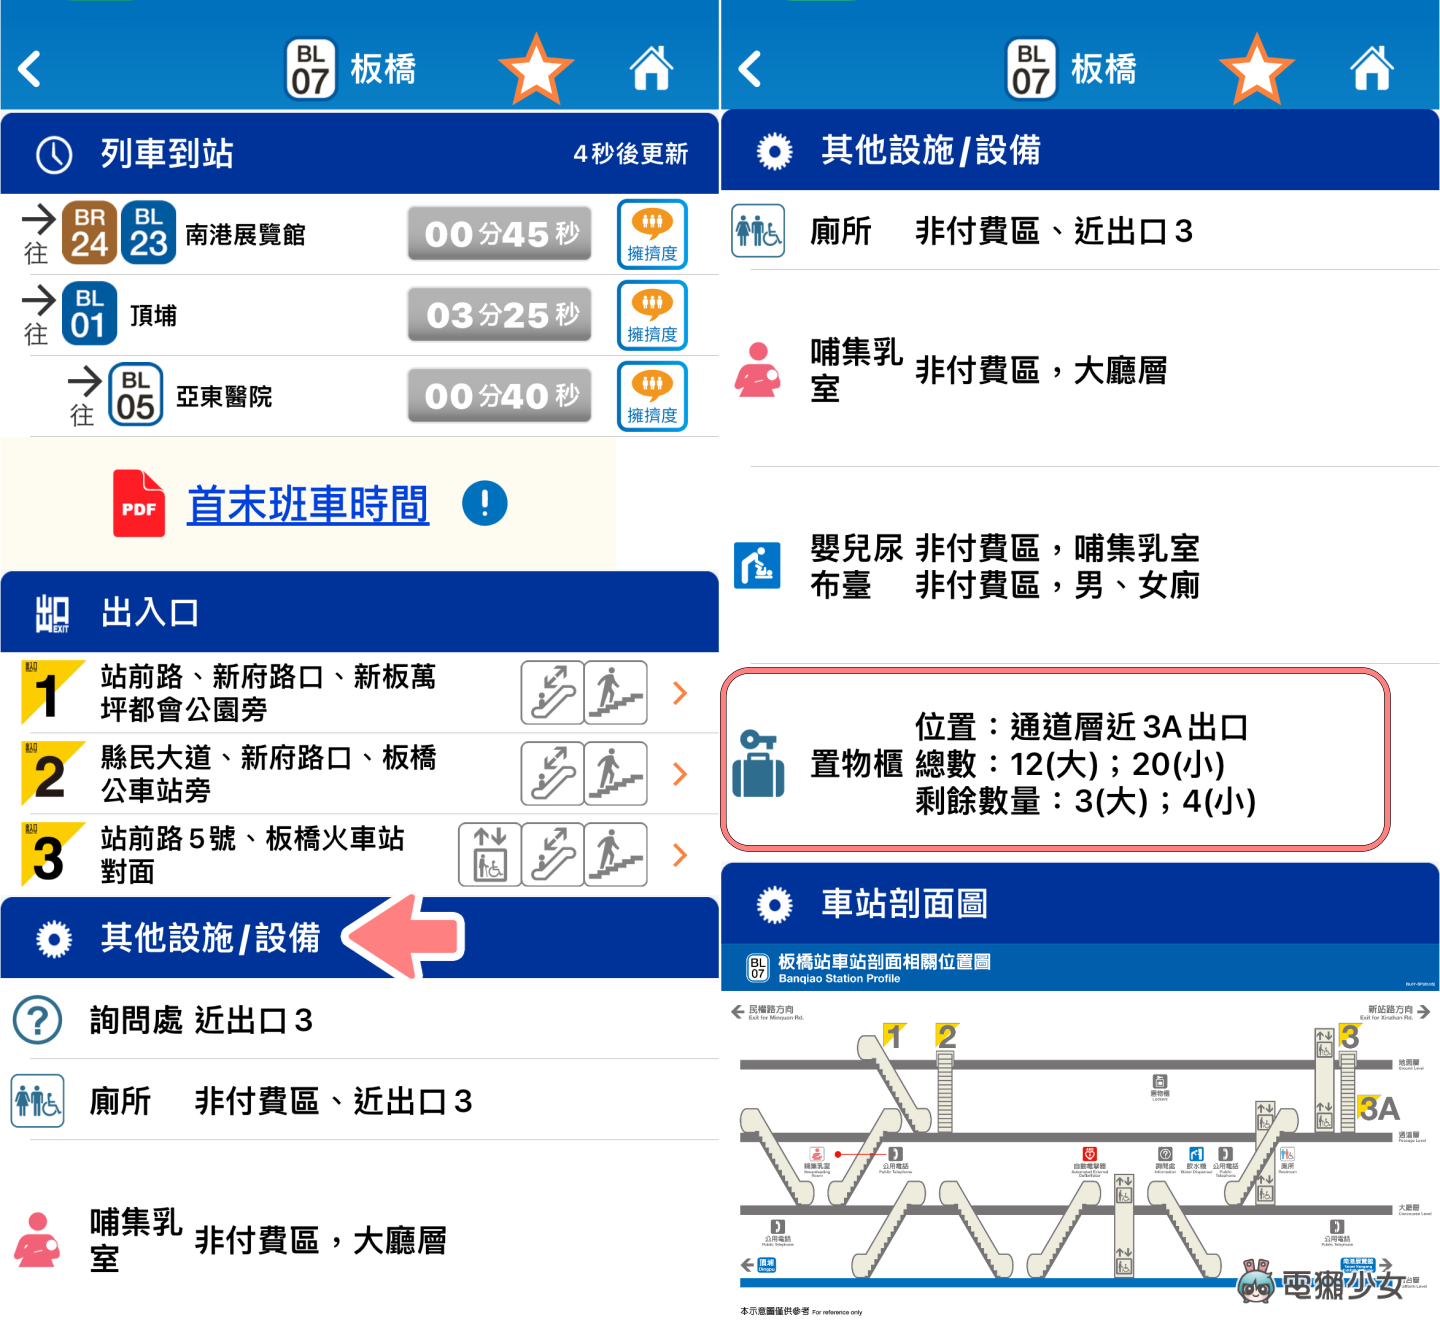 超方便！『 台北捷運 GO 』可查詢列車擁擠程度、各站置物櫃剩餘數量、即時顯示到站時間